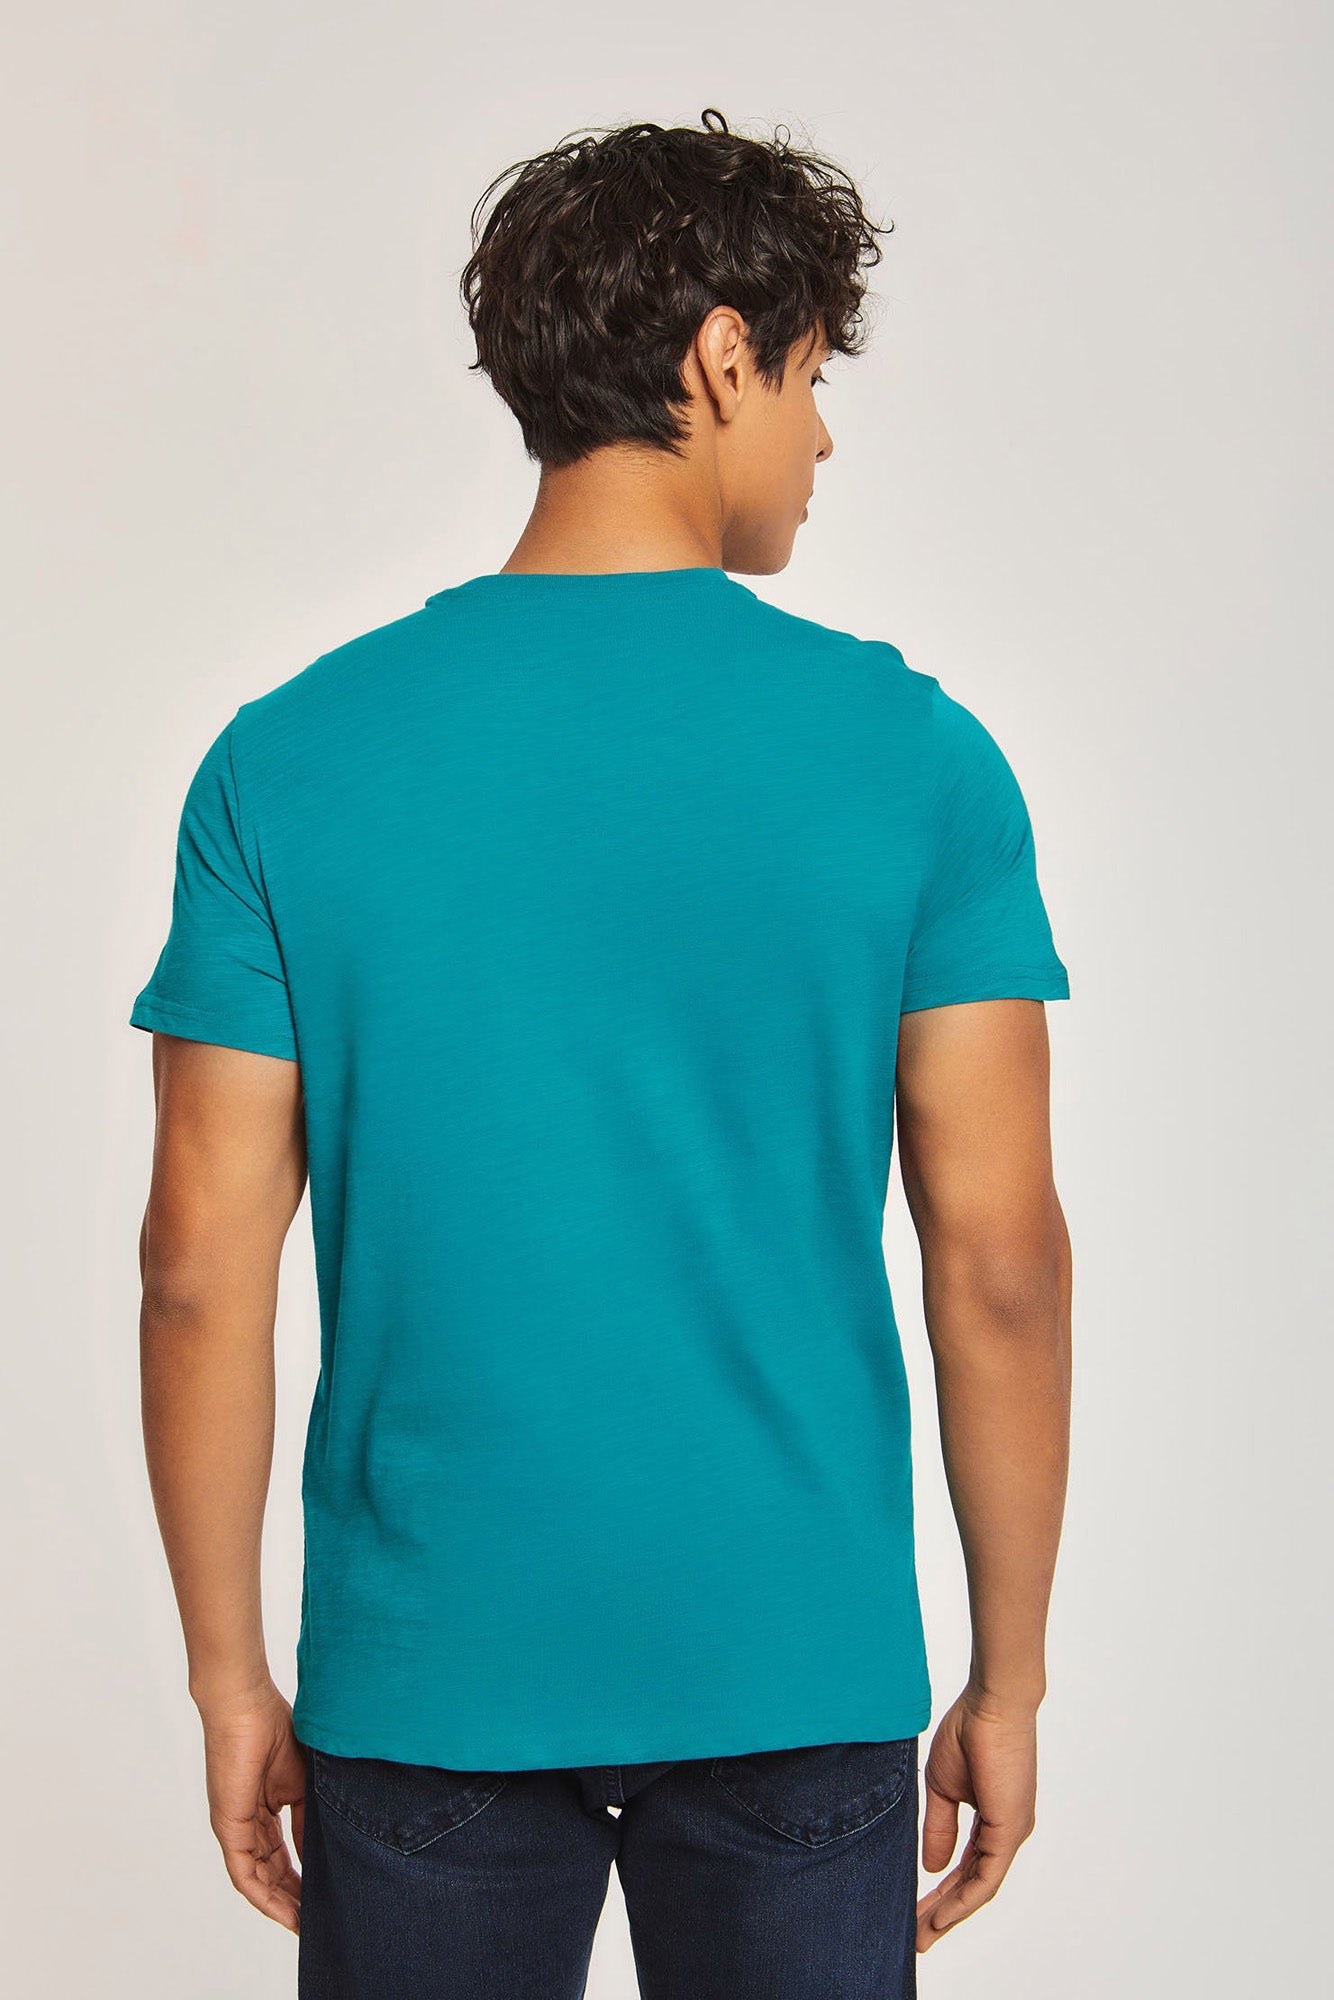 T-Shirt - Printed - Round Neck